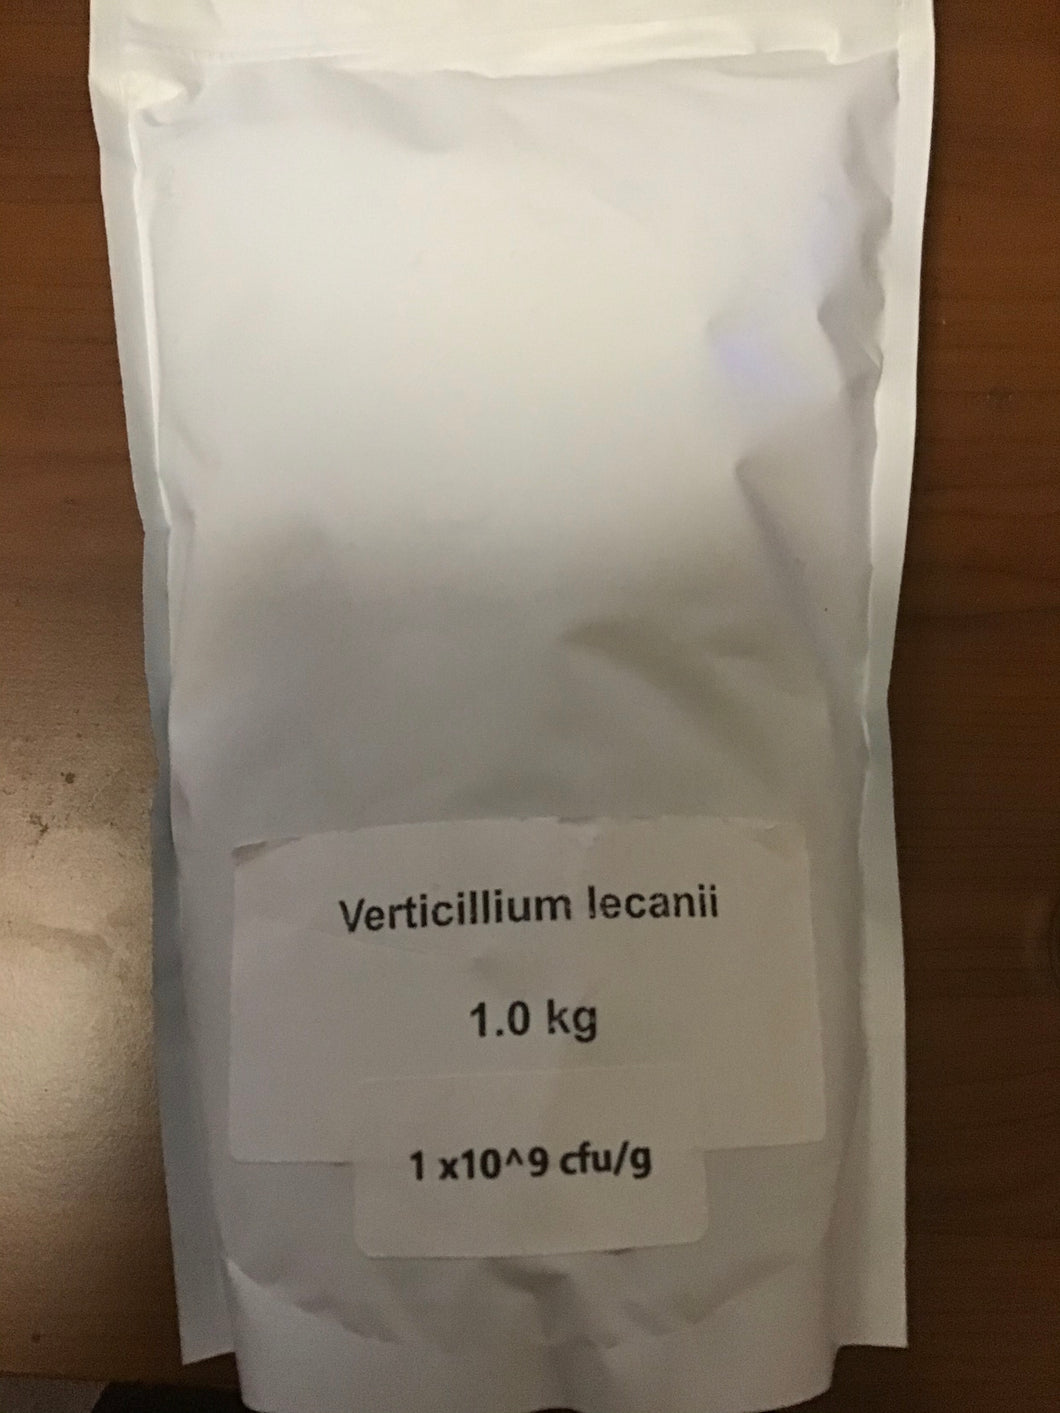 Verticillium lecanii - Kilogram (Dextrose Carrier)